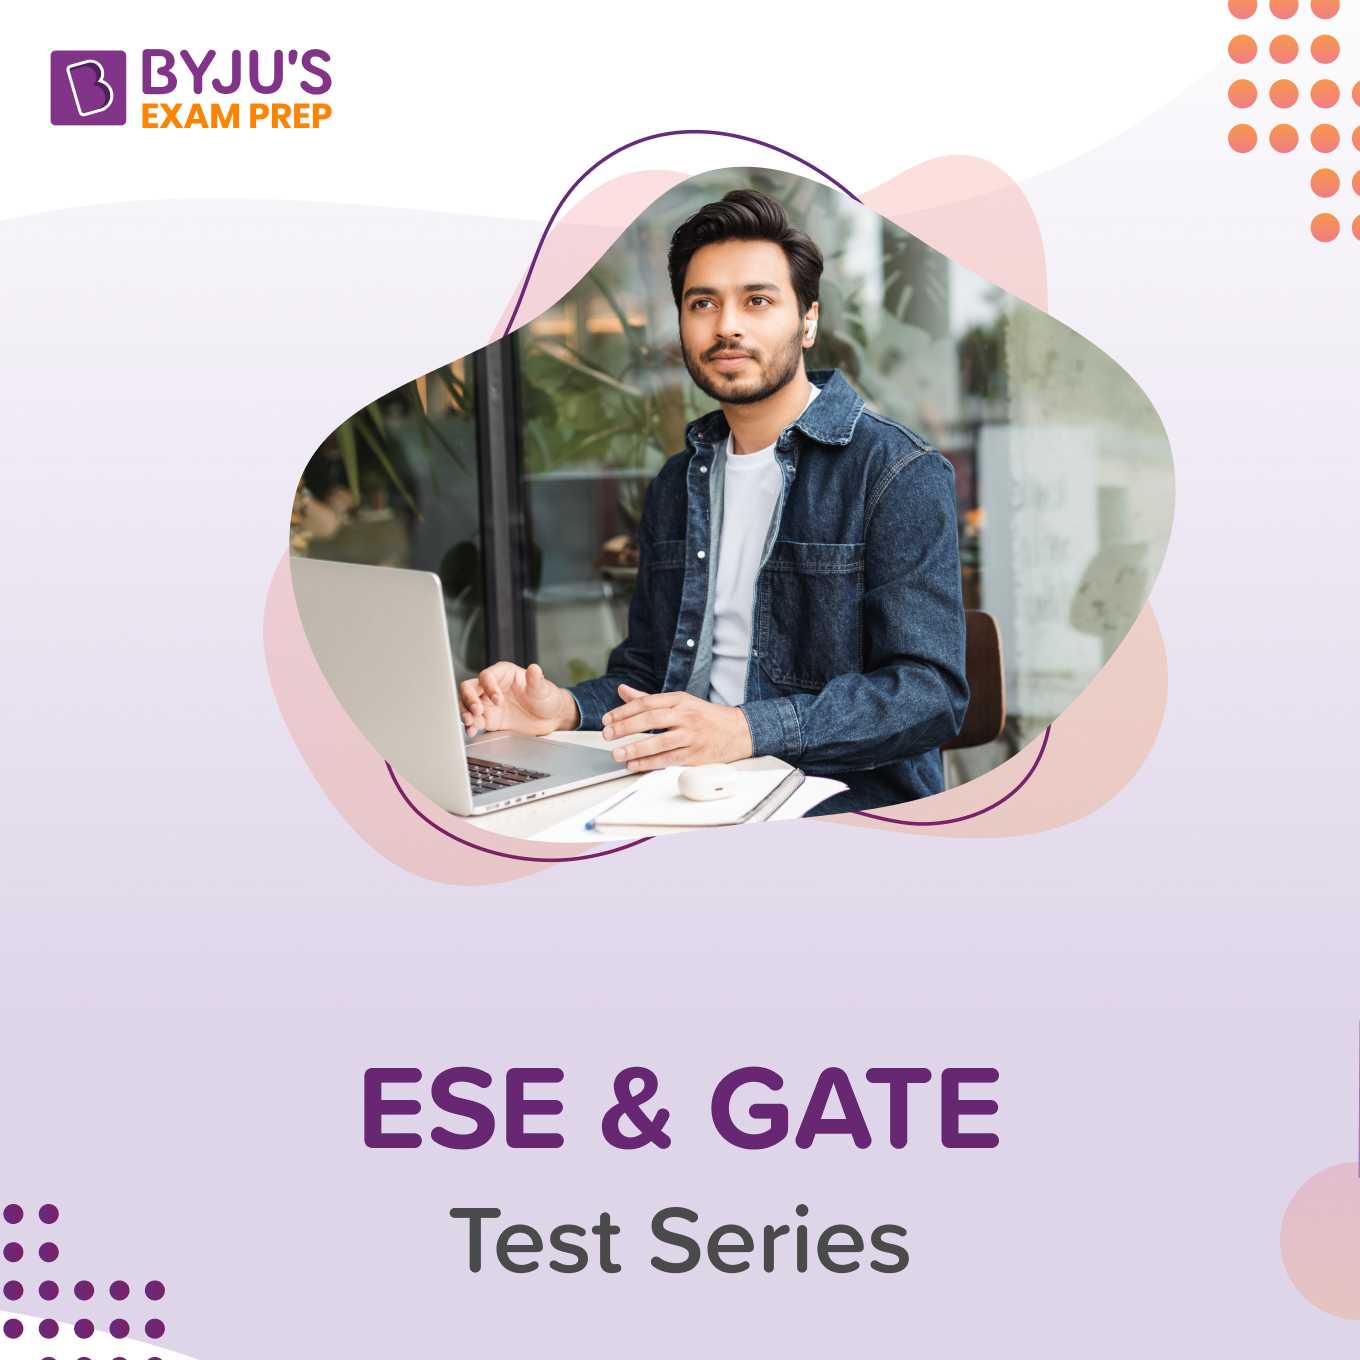 ESE & GATE - Test Series